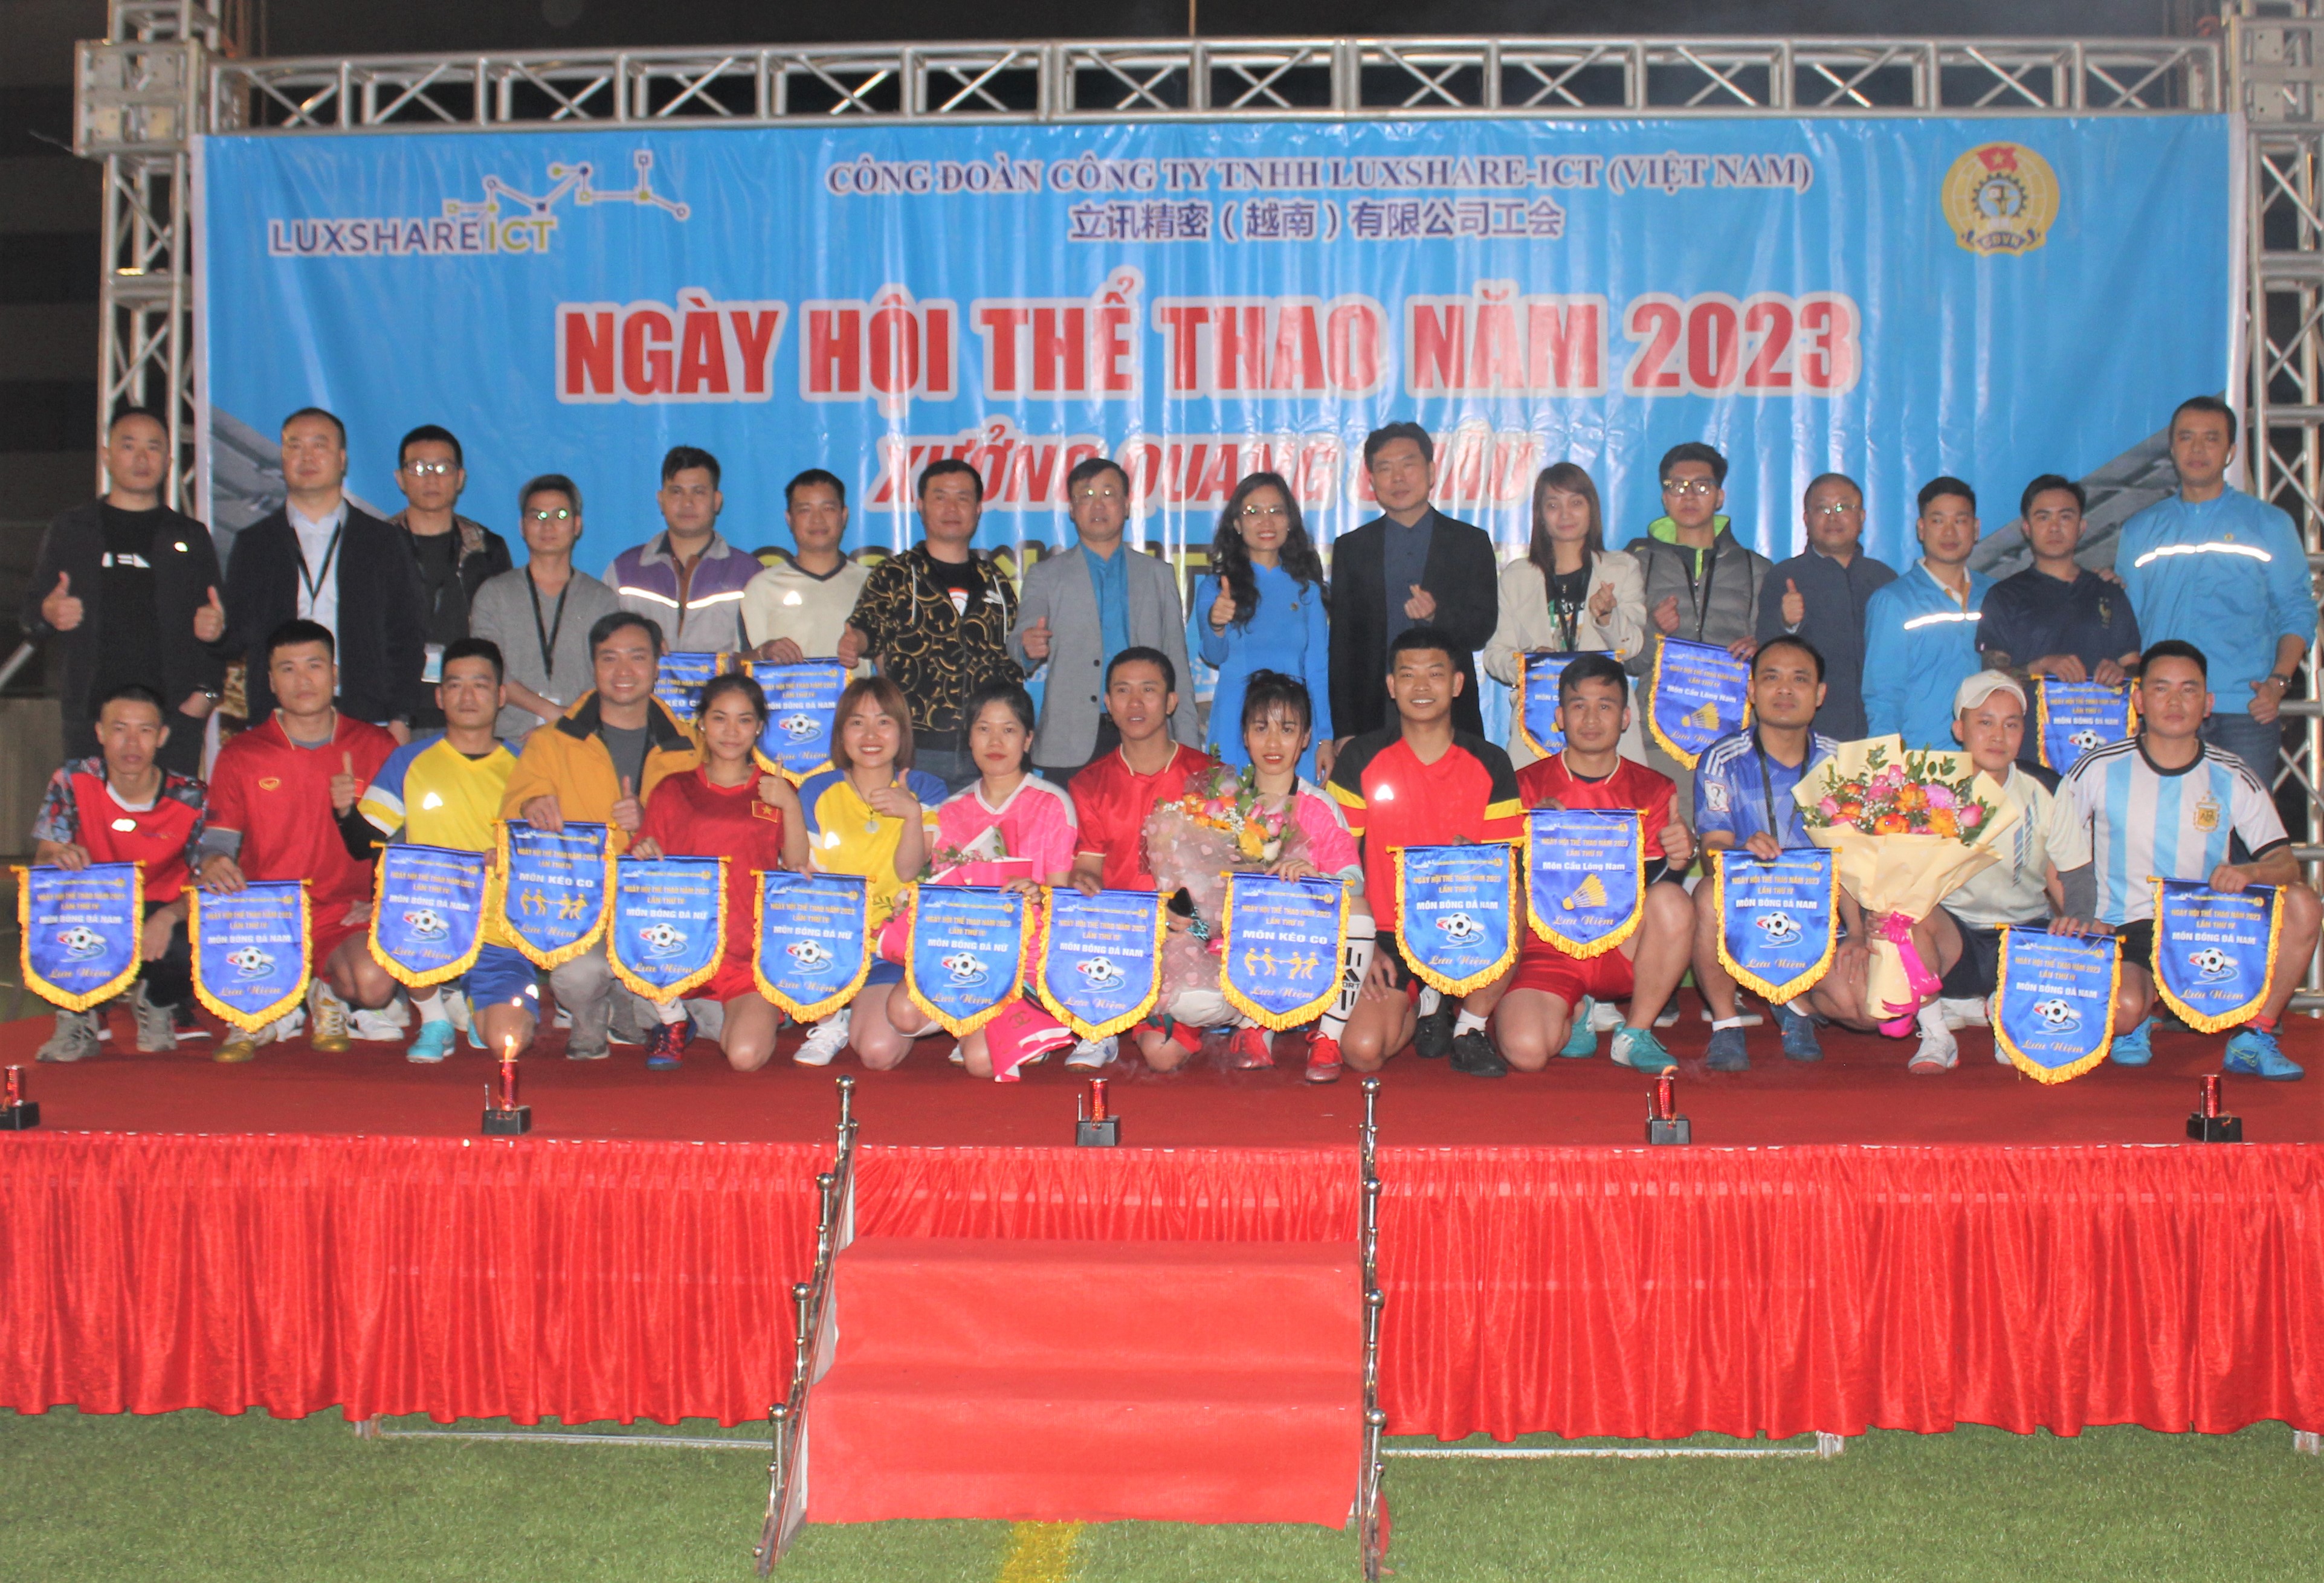 Công đoàn Công ty TNHH Luxshare - ICT (Việt Nam) Tổ chức khai mạc Ngày hội thể thao năm 2023